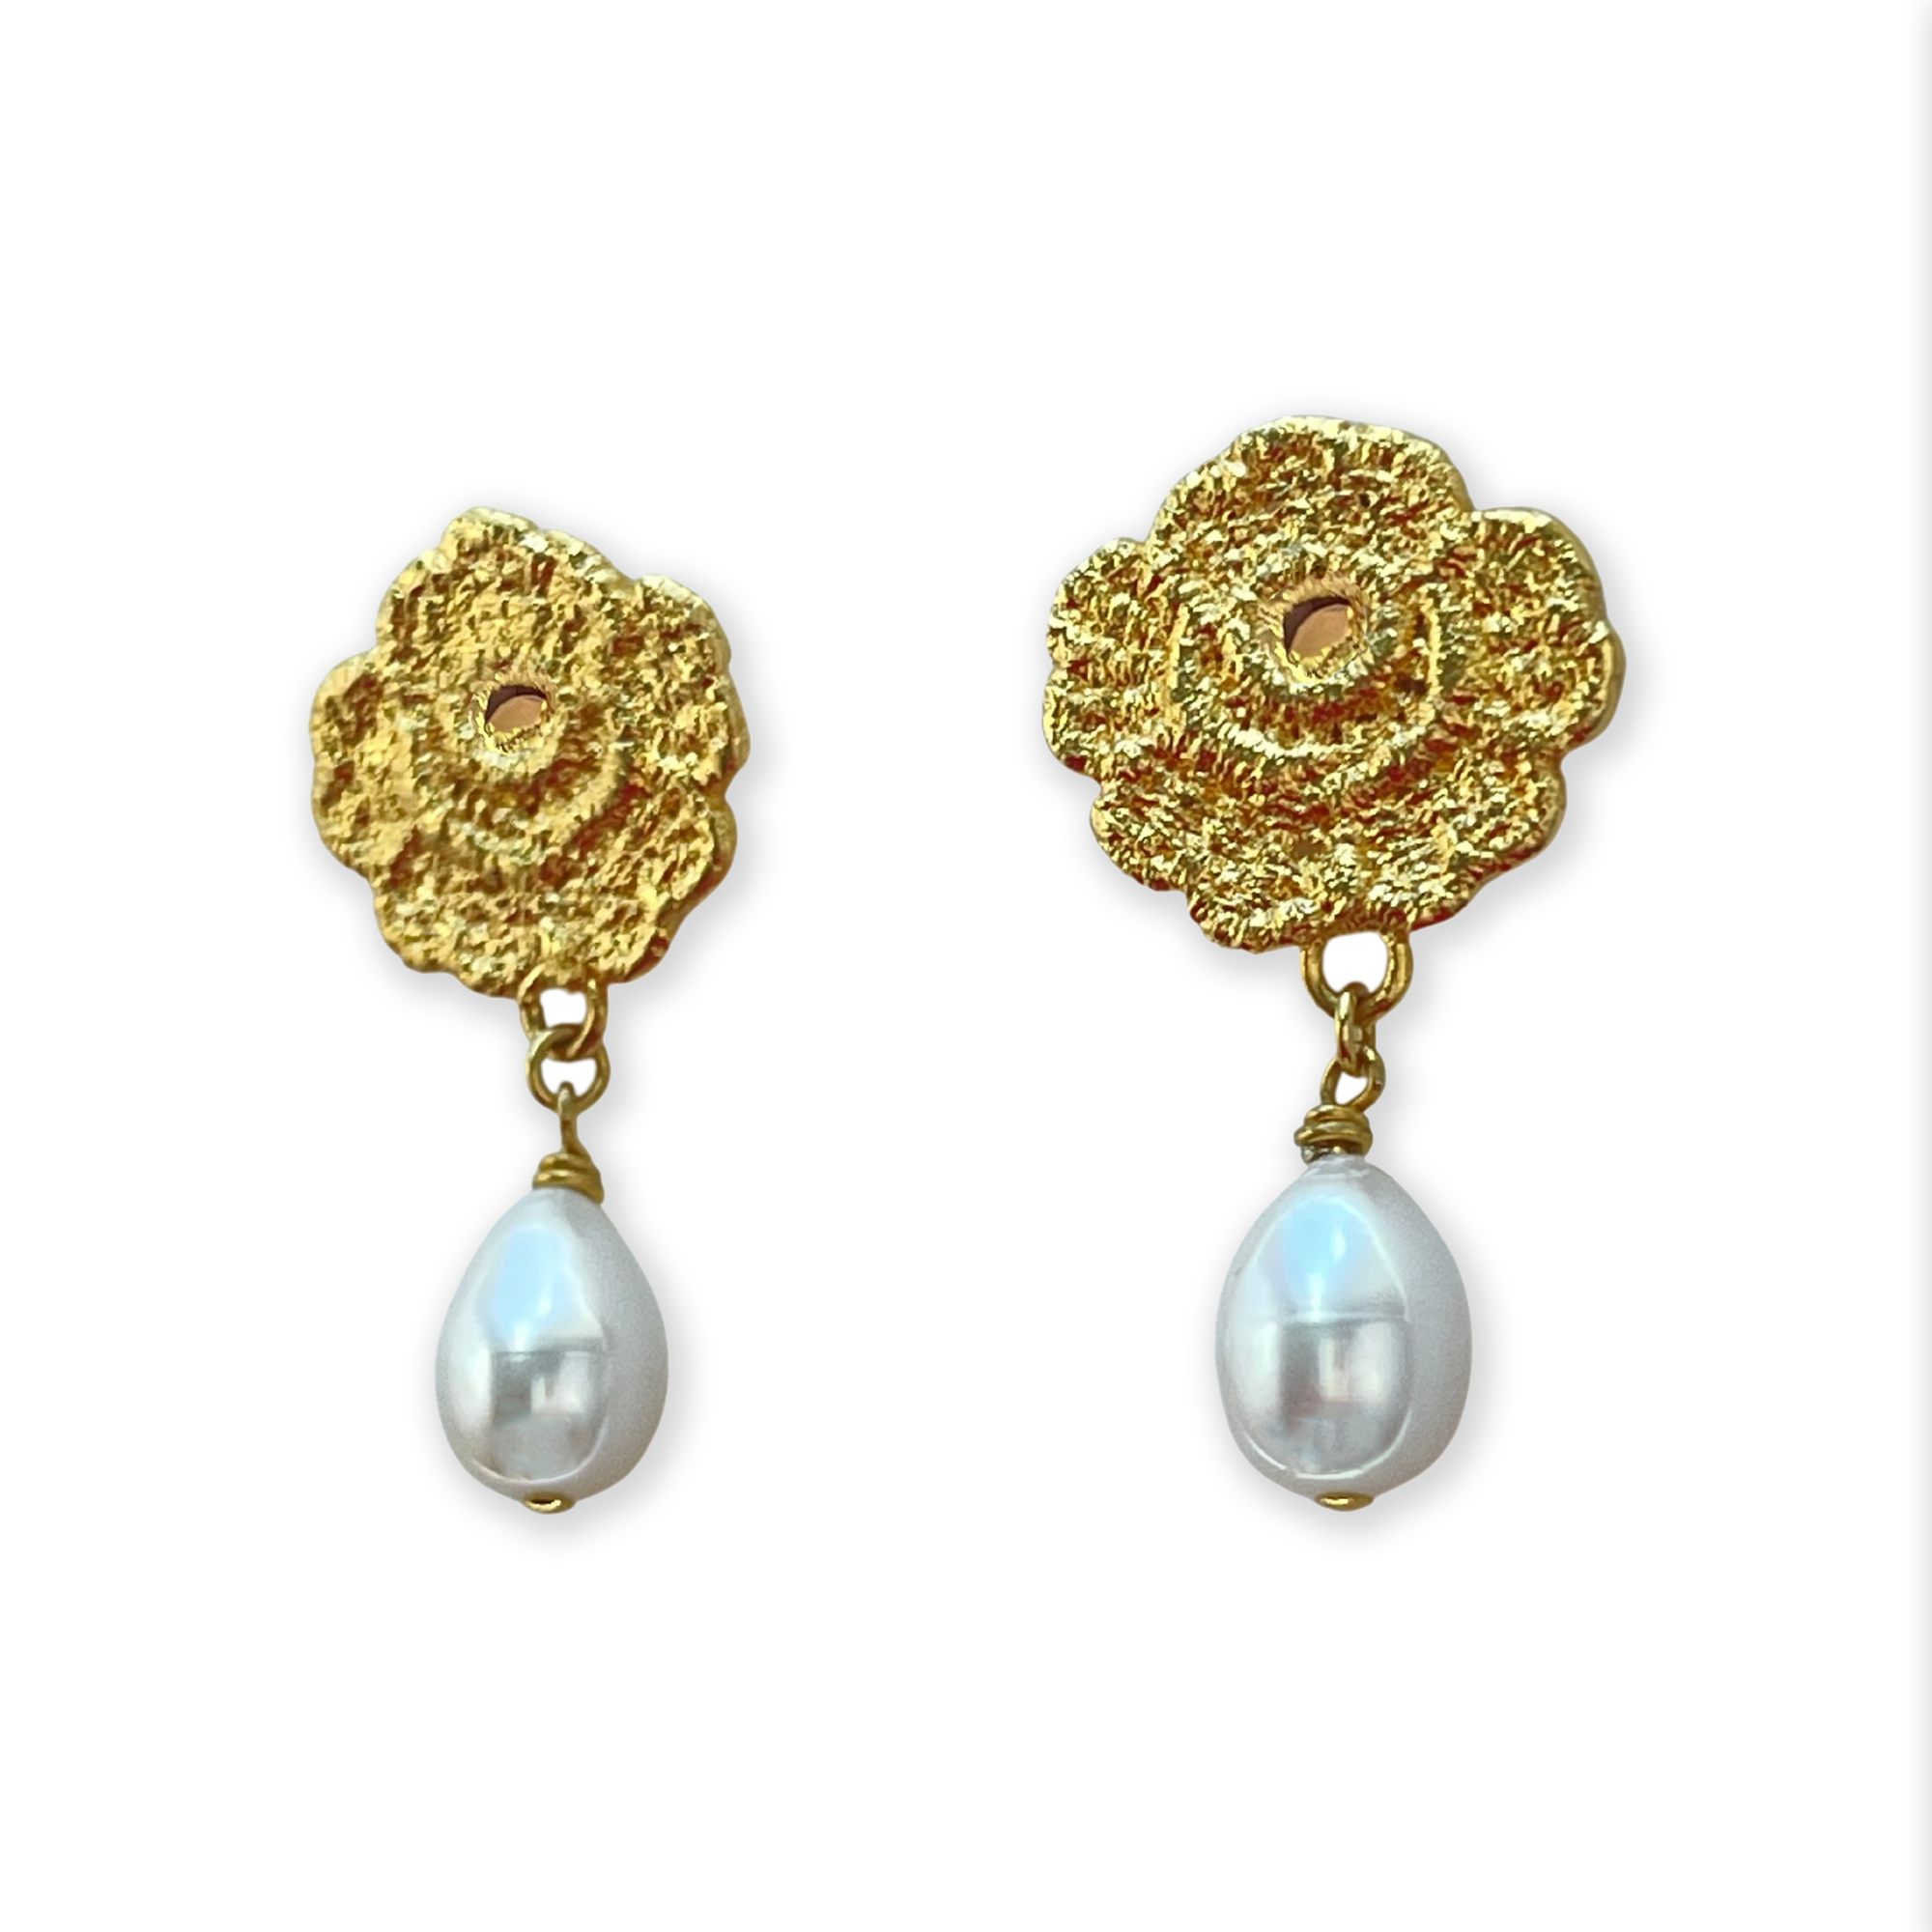 Lace rose pearl drop earrings in 24k gold.